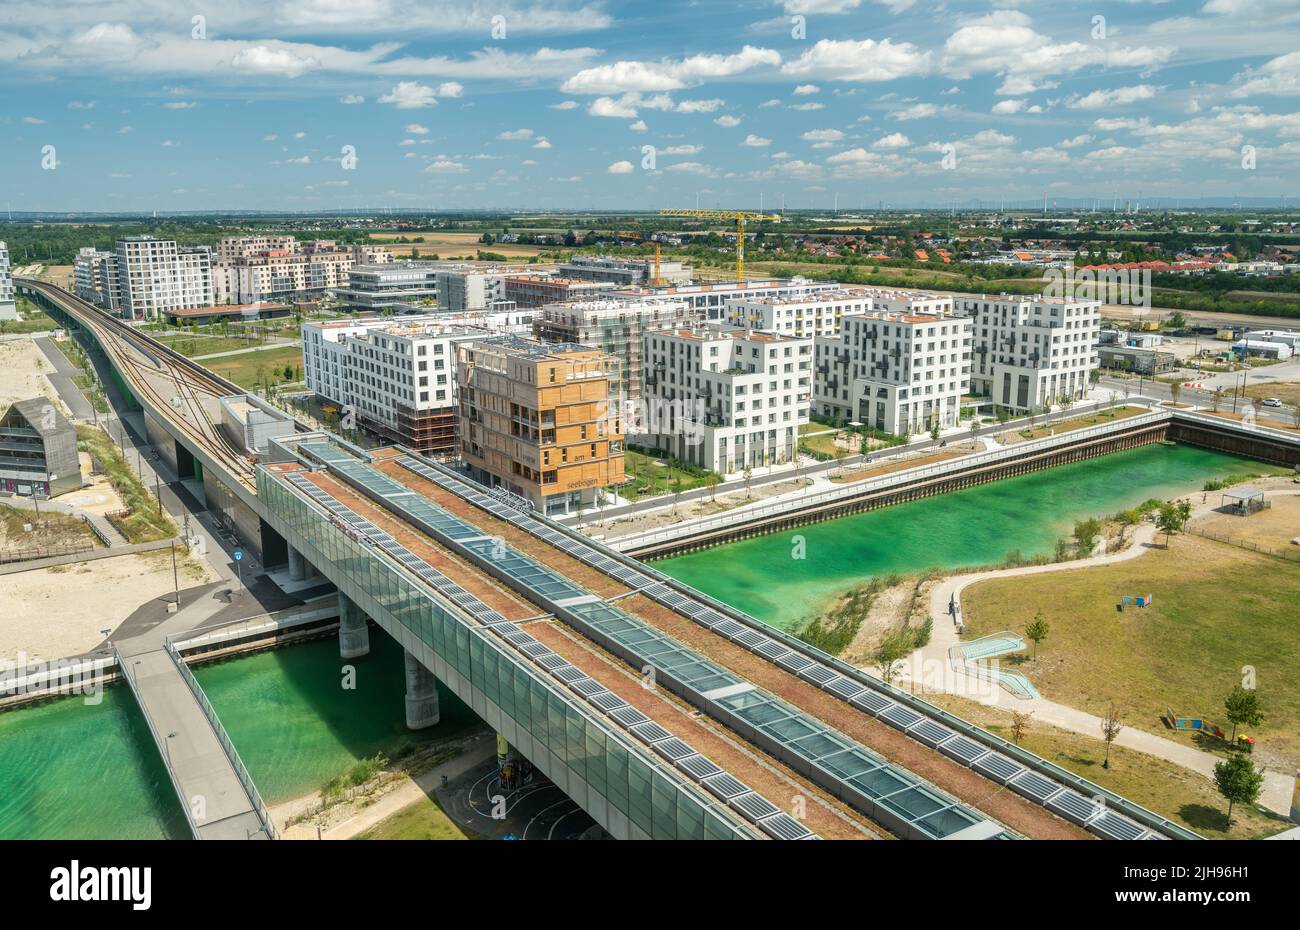 Viena, Austria – 15 de julio de 2022. Vista aérea del barrio Aspern Seestadt de Viena. Foto de stock